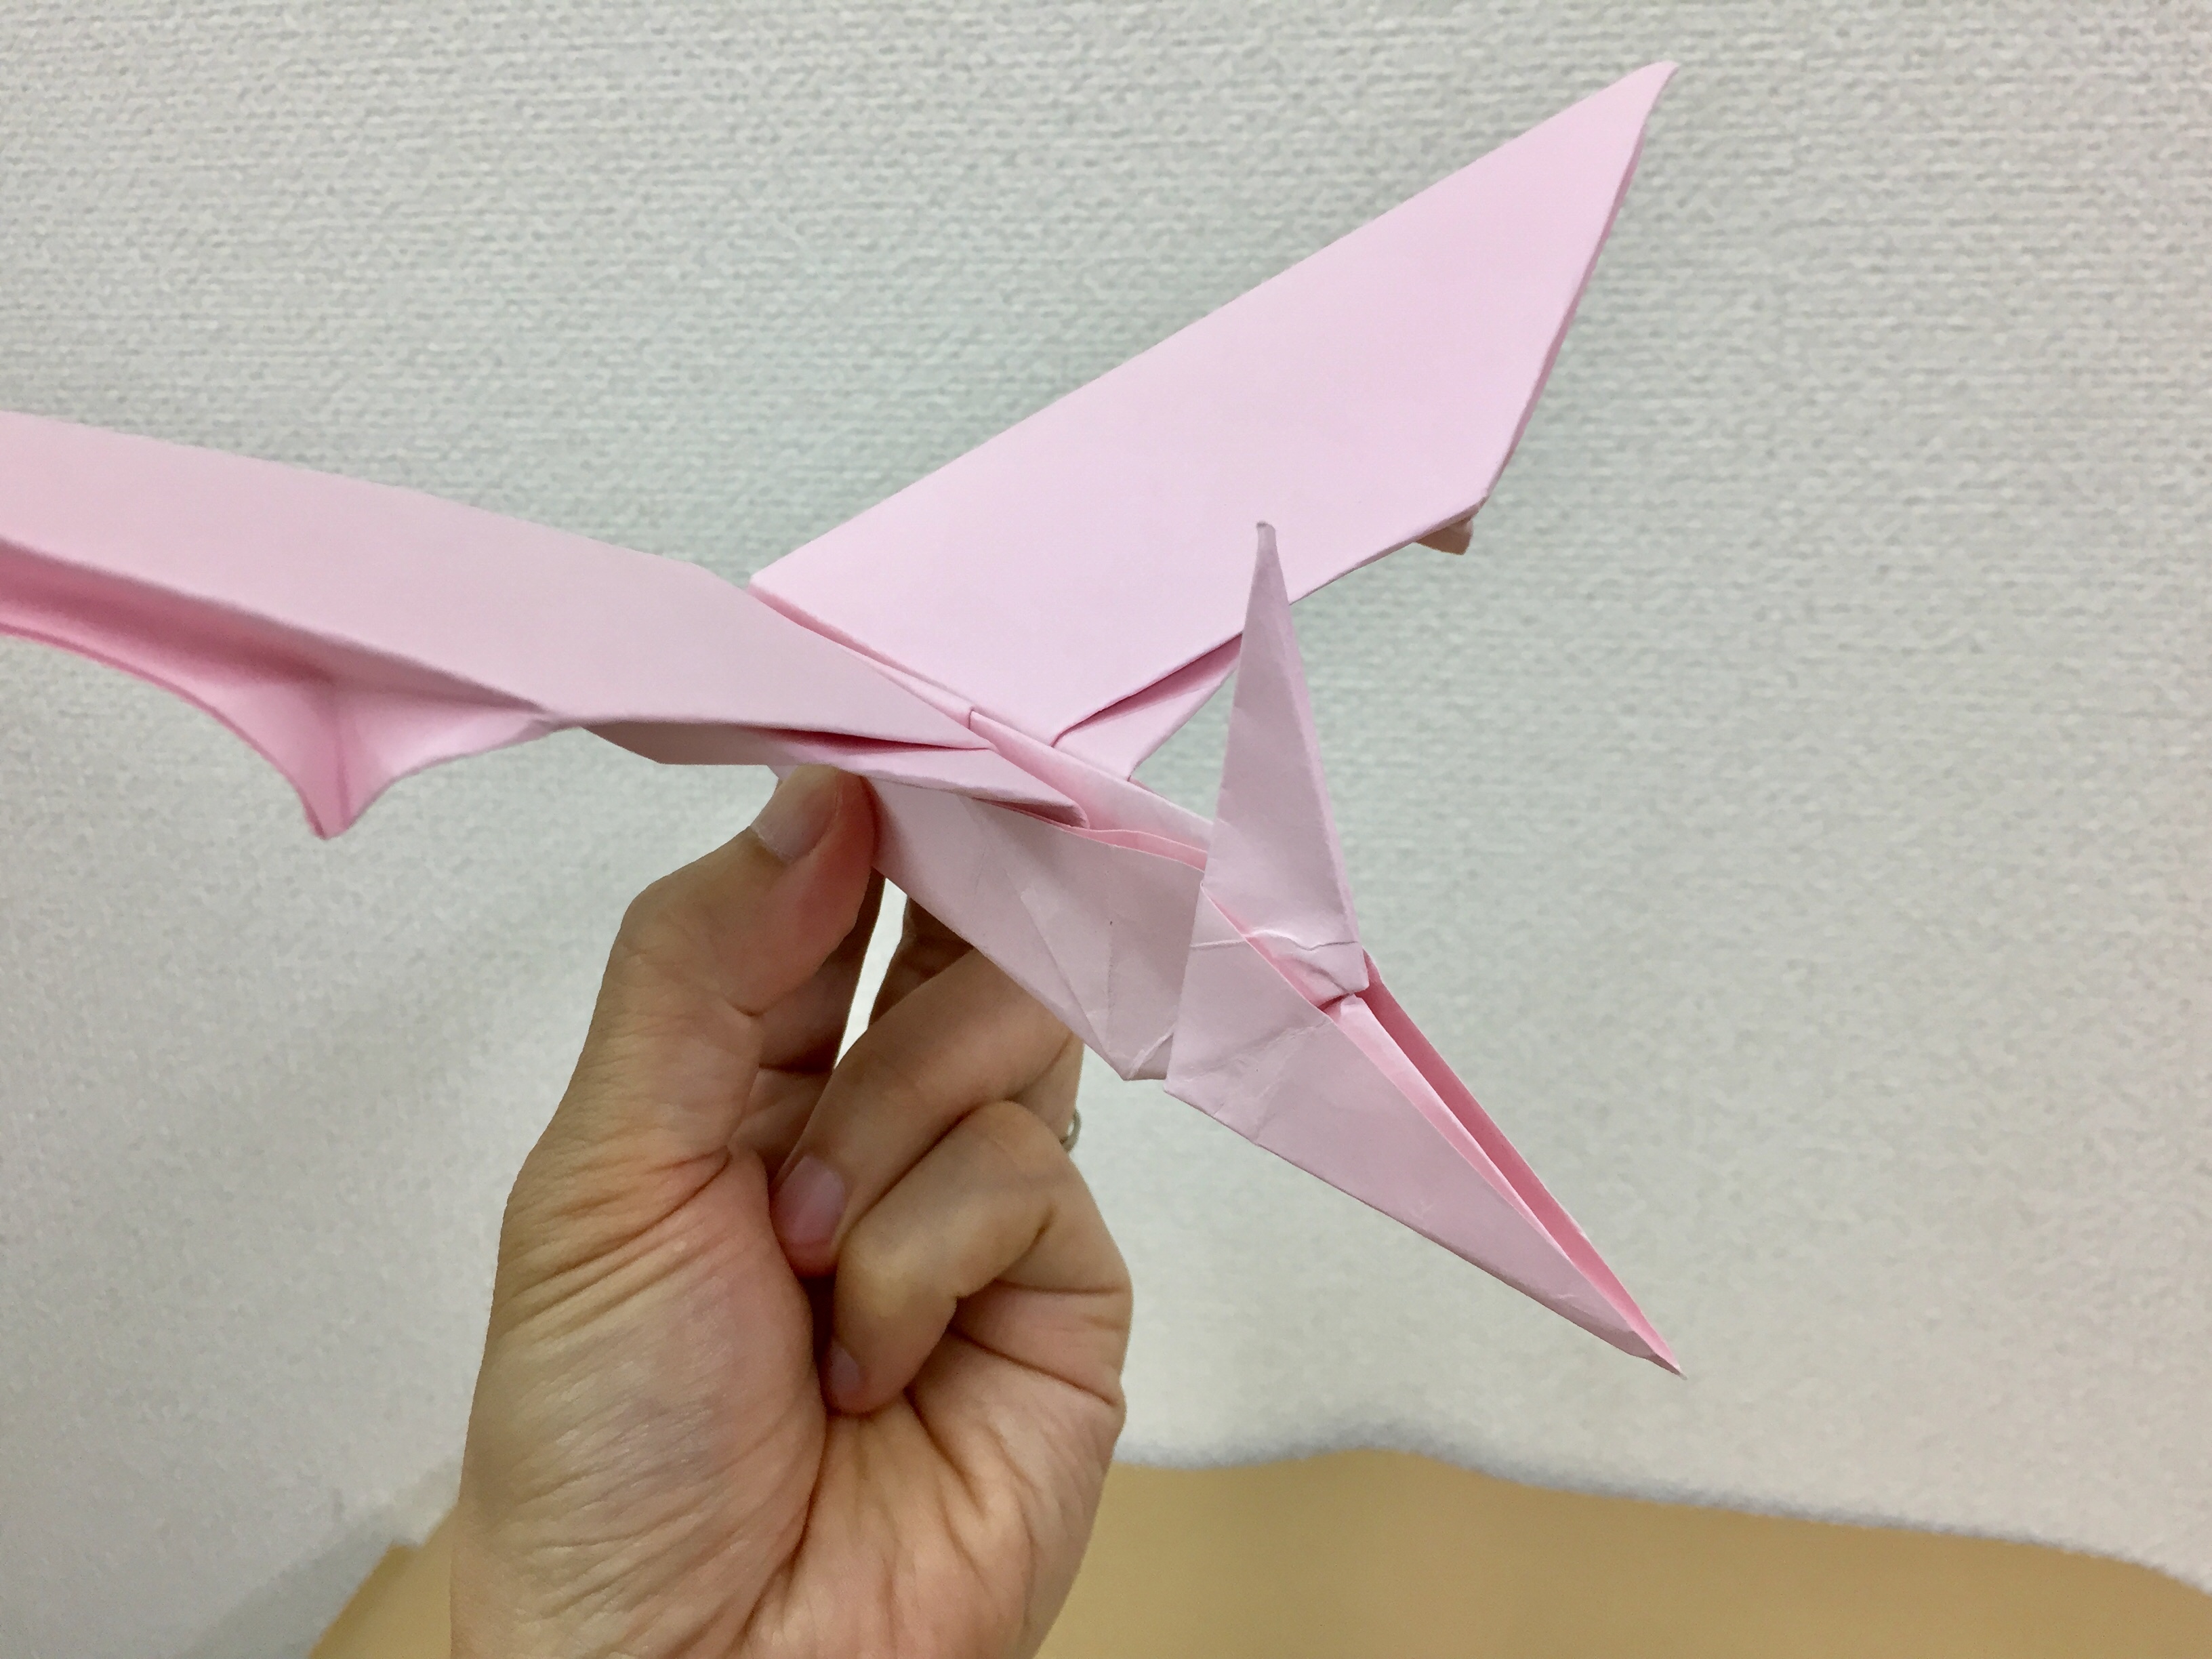 みんな大好きな恐竜を折り紙で折ってみよう 翼竜プテラノドンの折り方を紹介します 神戸の印刷 出版と販促 前川企画印刷公式ブログ 嵐のマエブロ